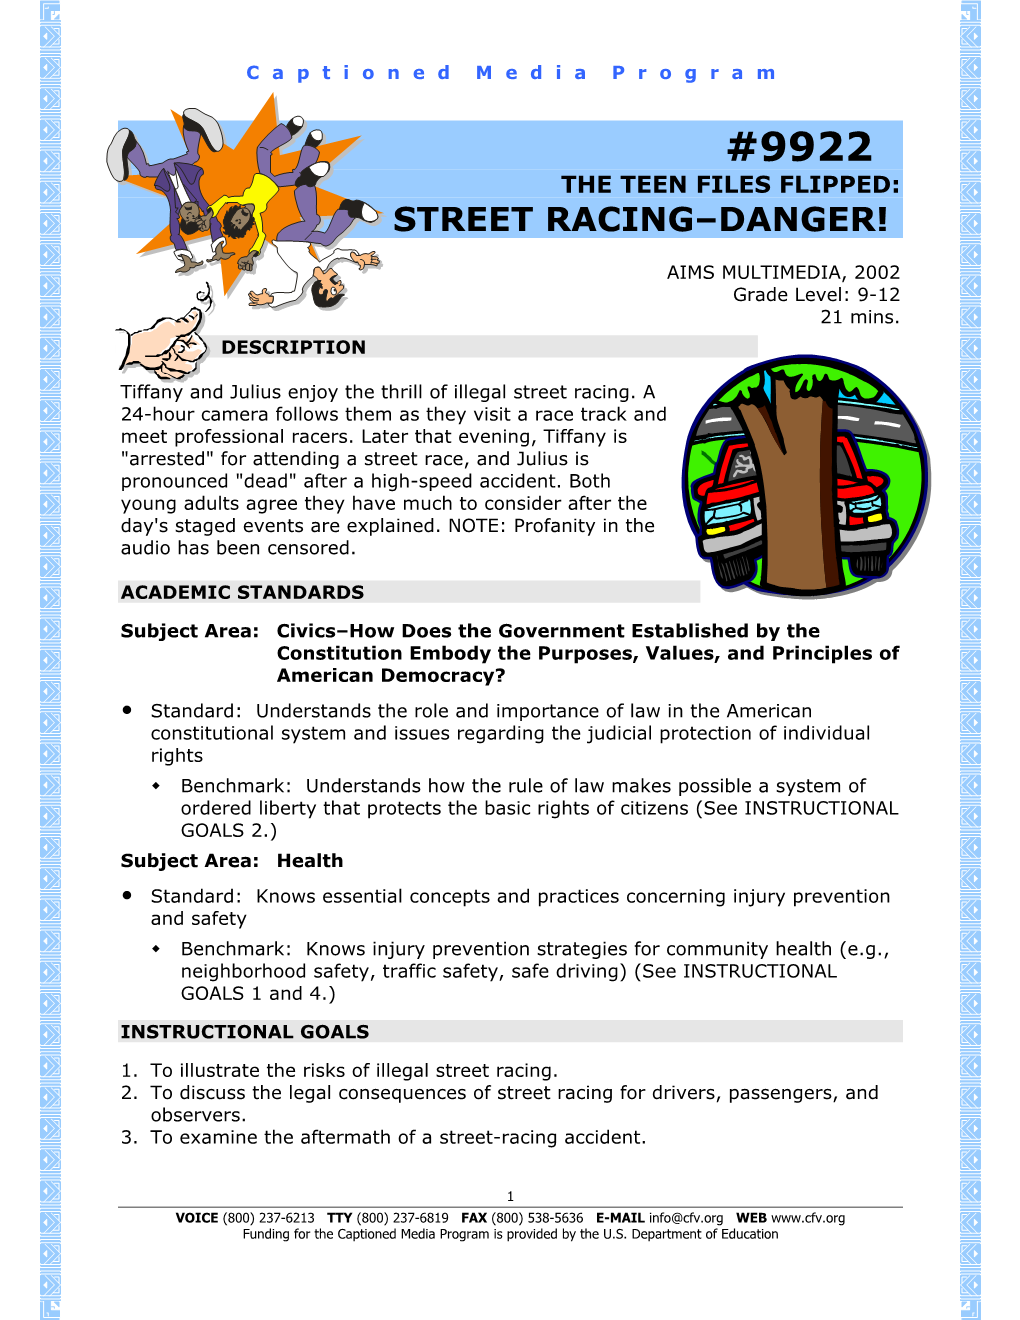 Street Racing-Danger!